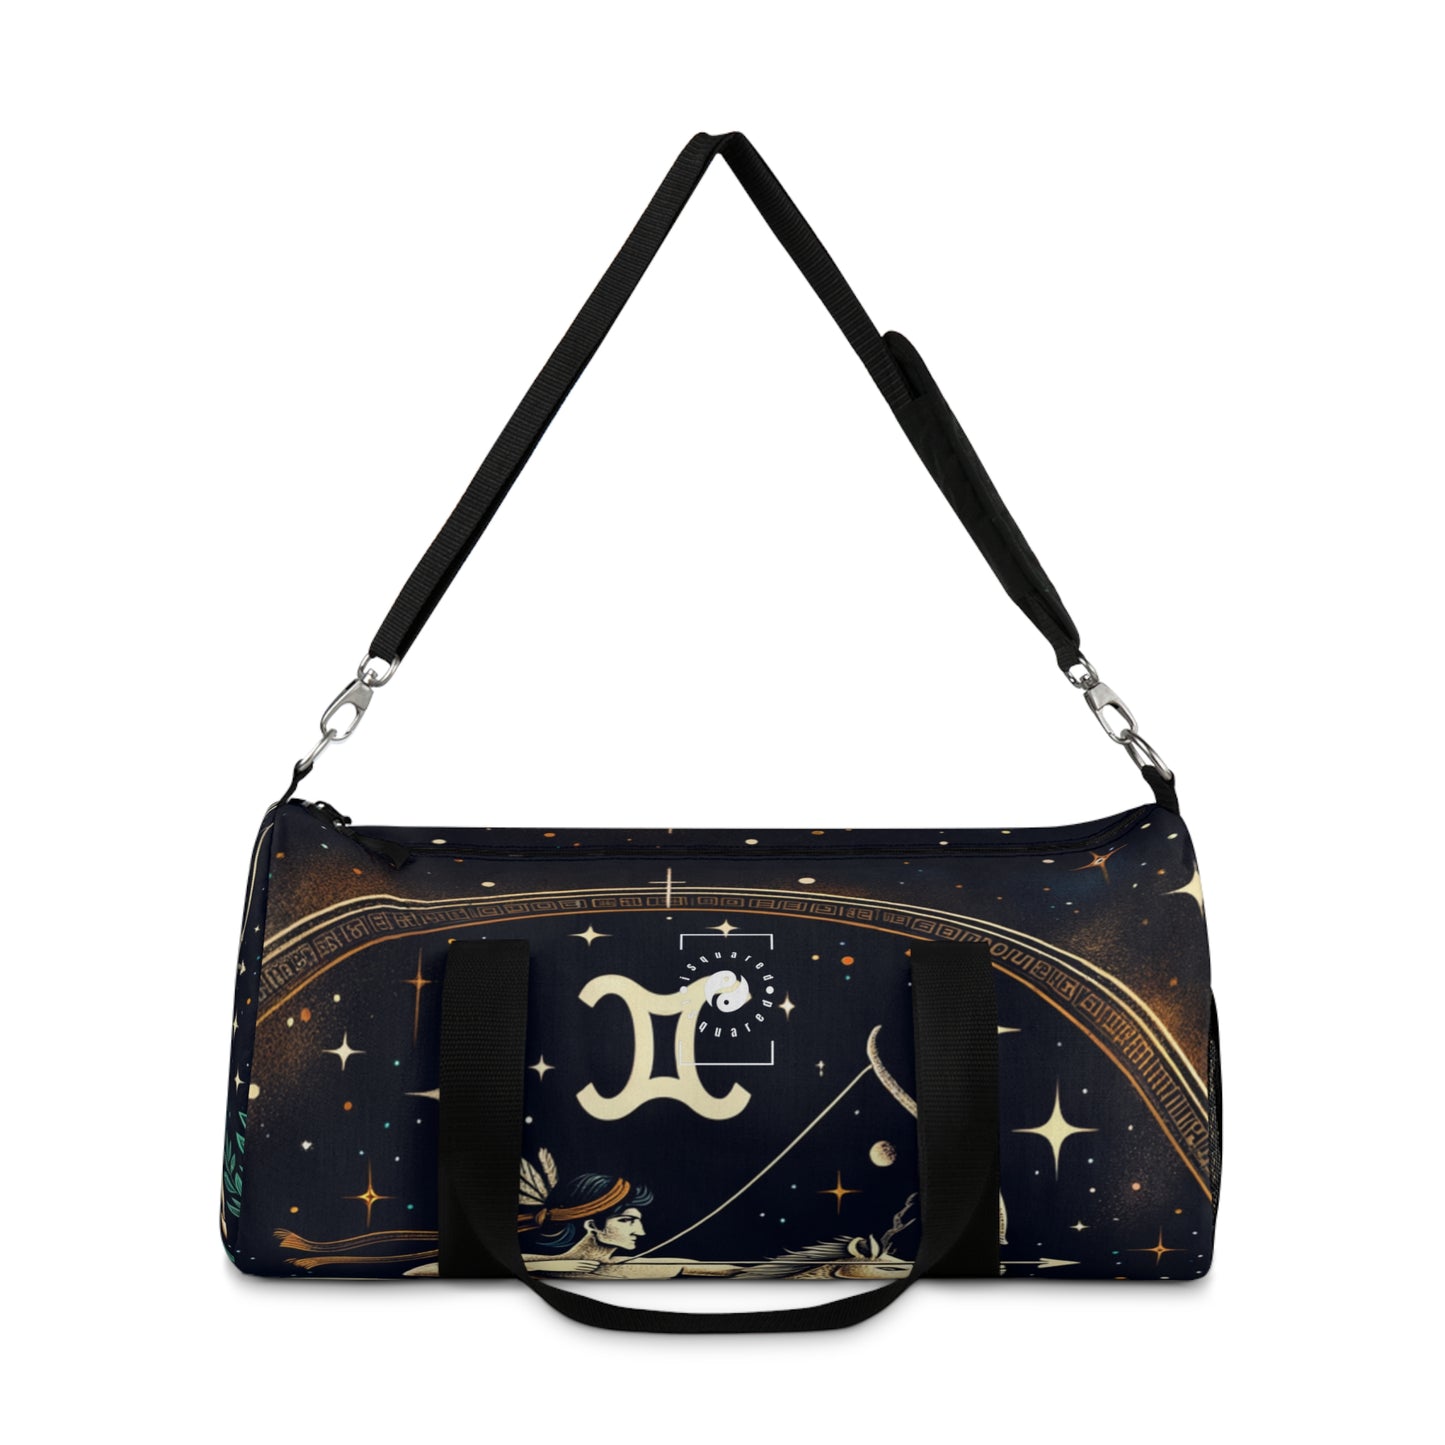 Sagittarius Emblem - Duffle Bag